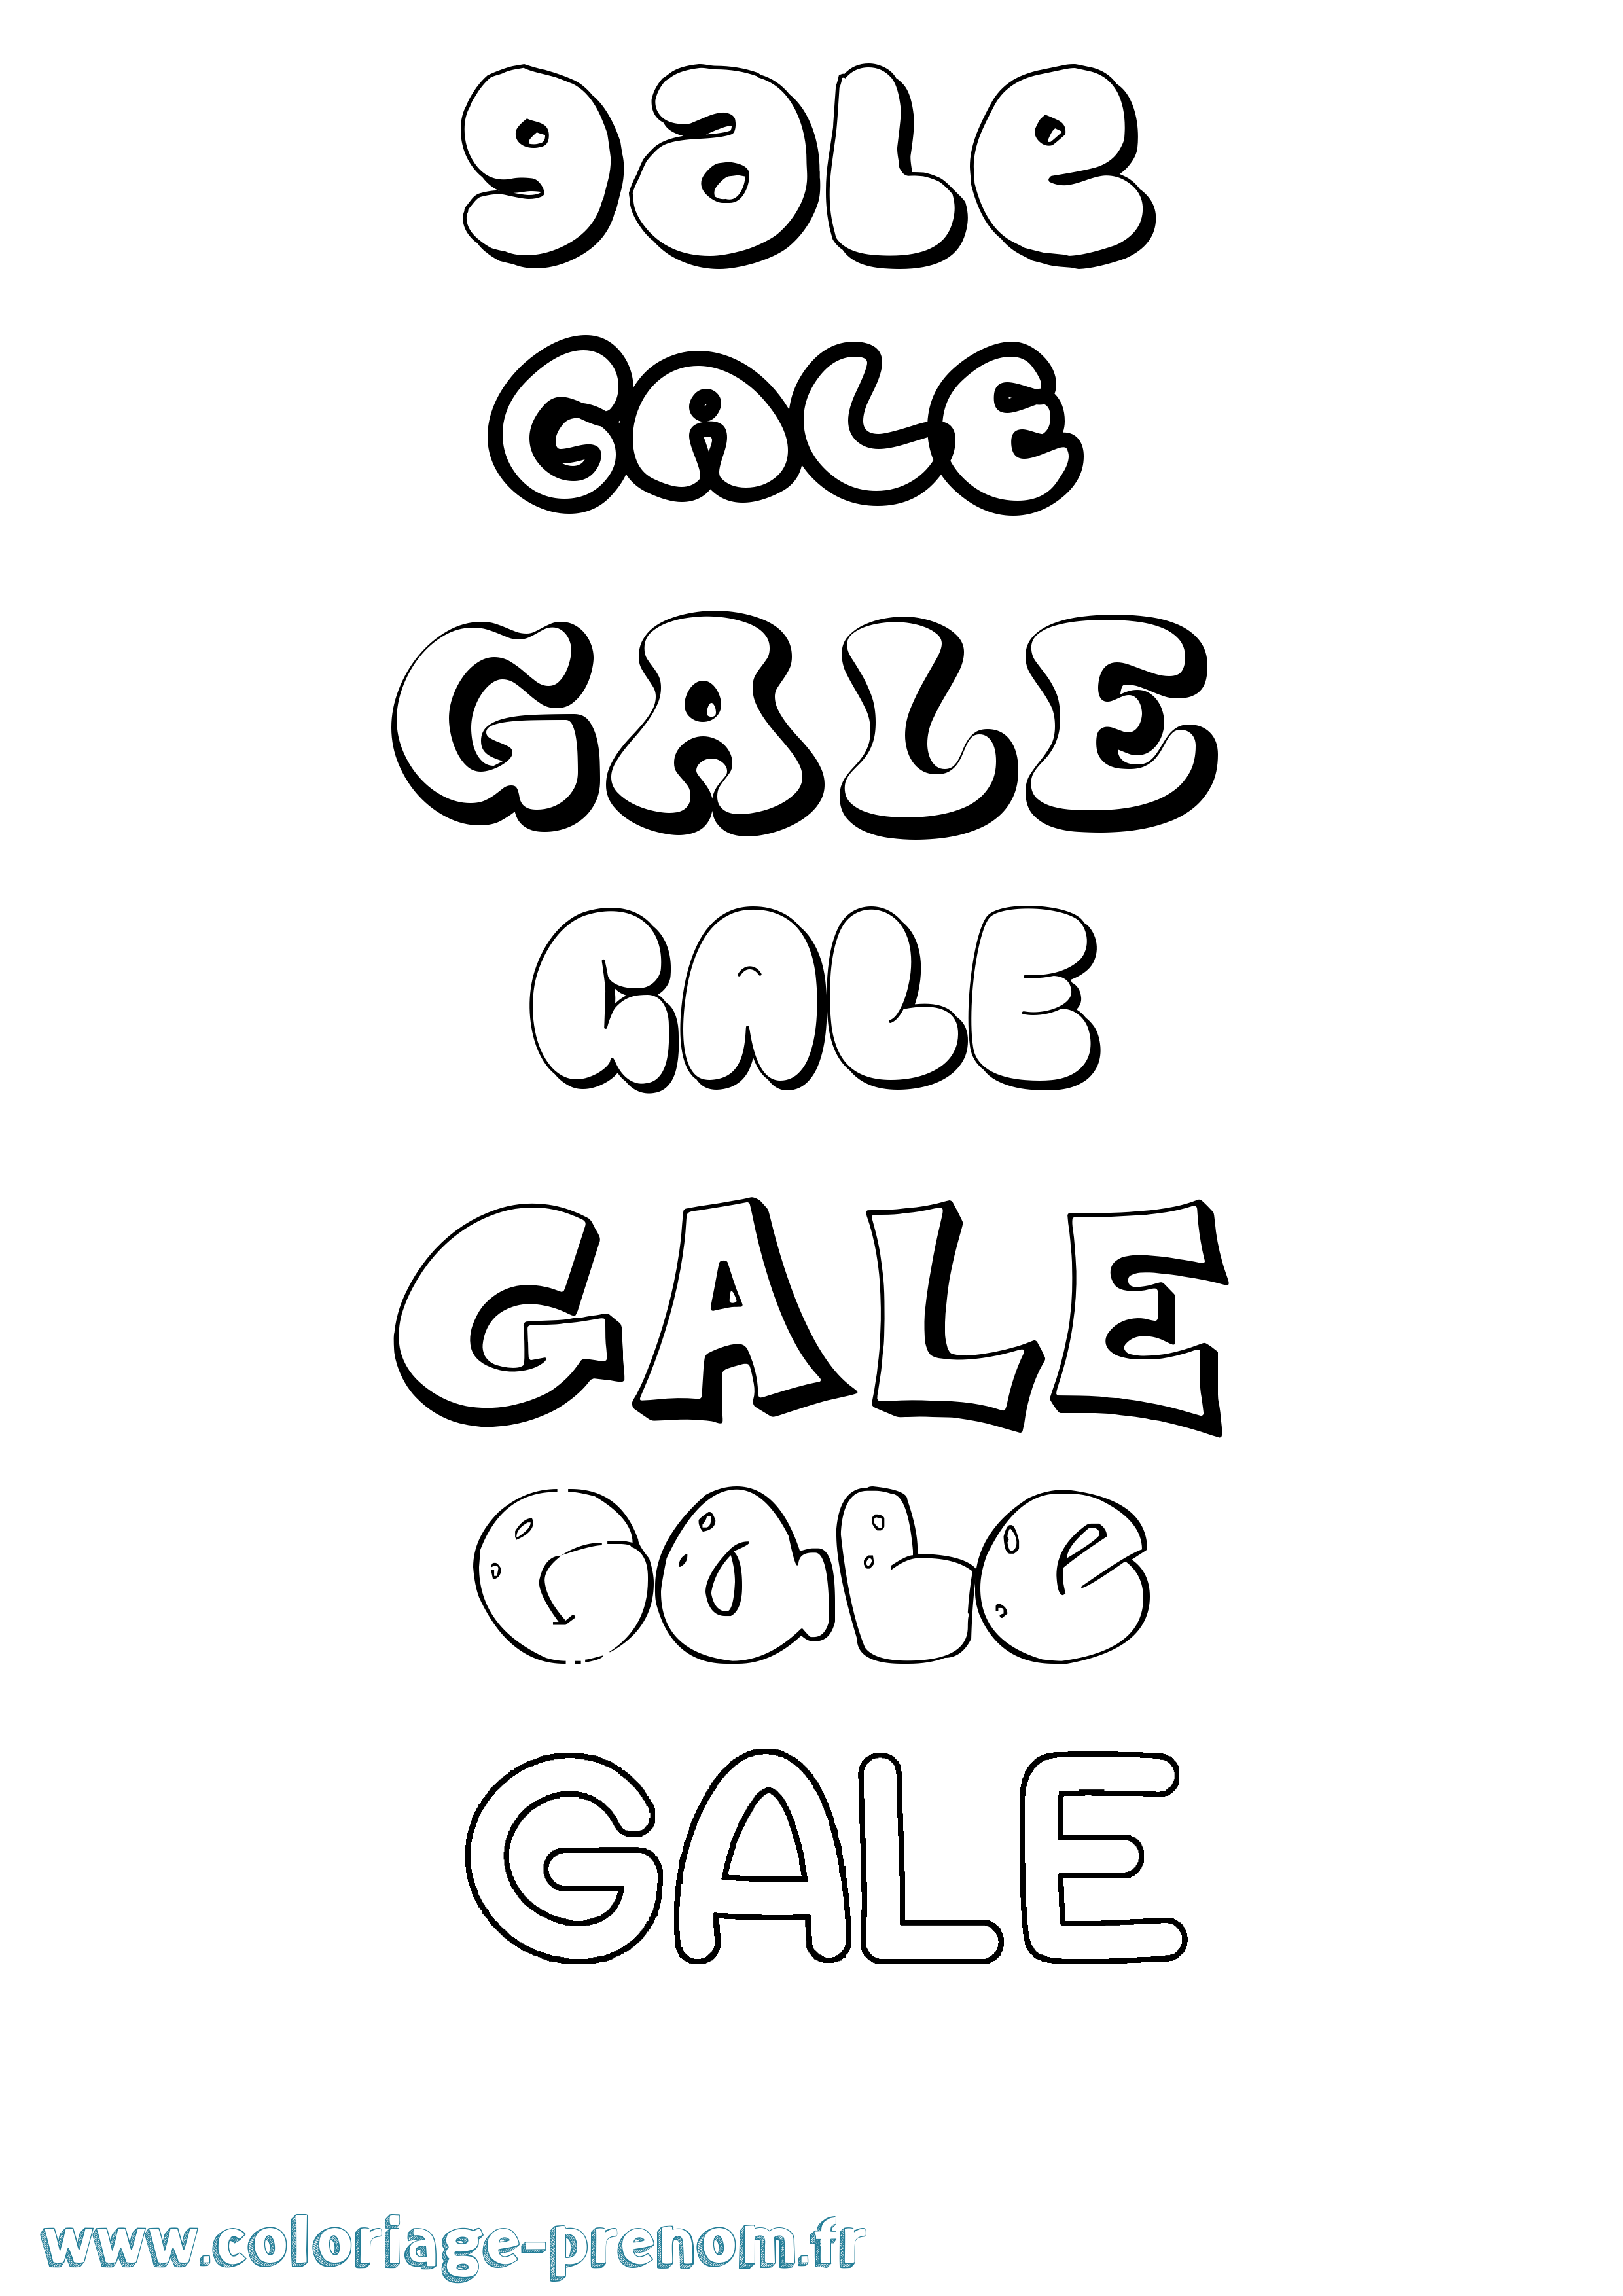 Coloriage prénom Gale Bubble